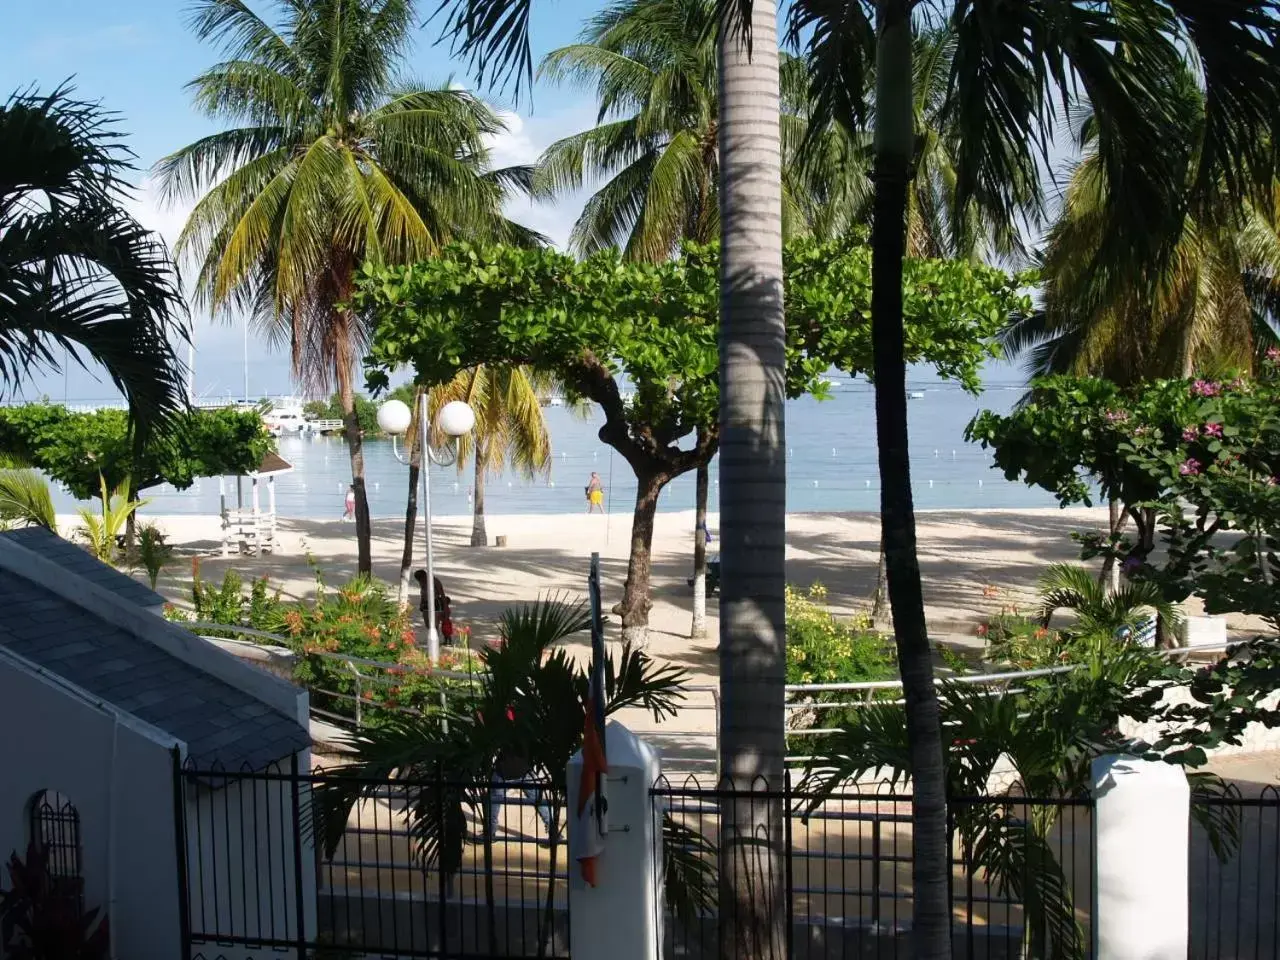 Sea view in Sandcastles Resort, Ocho Rios